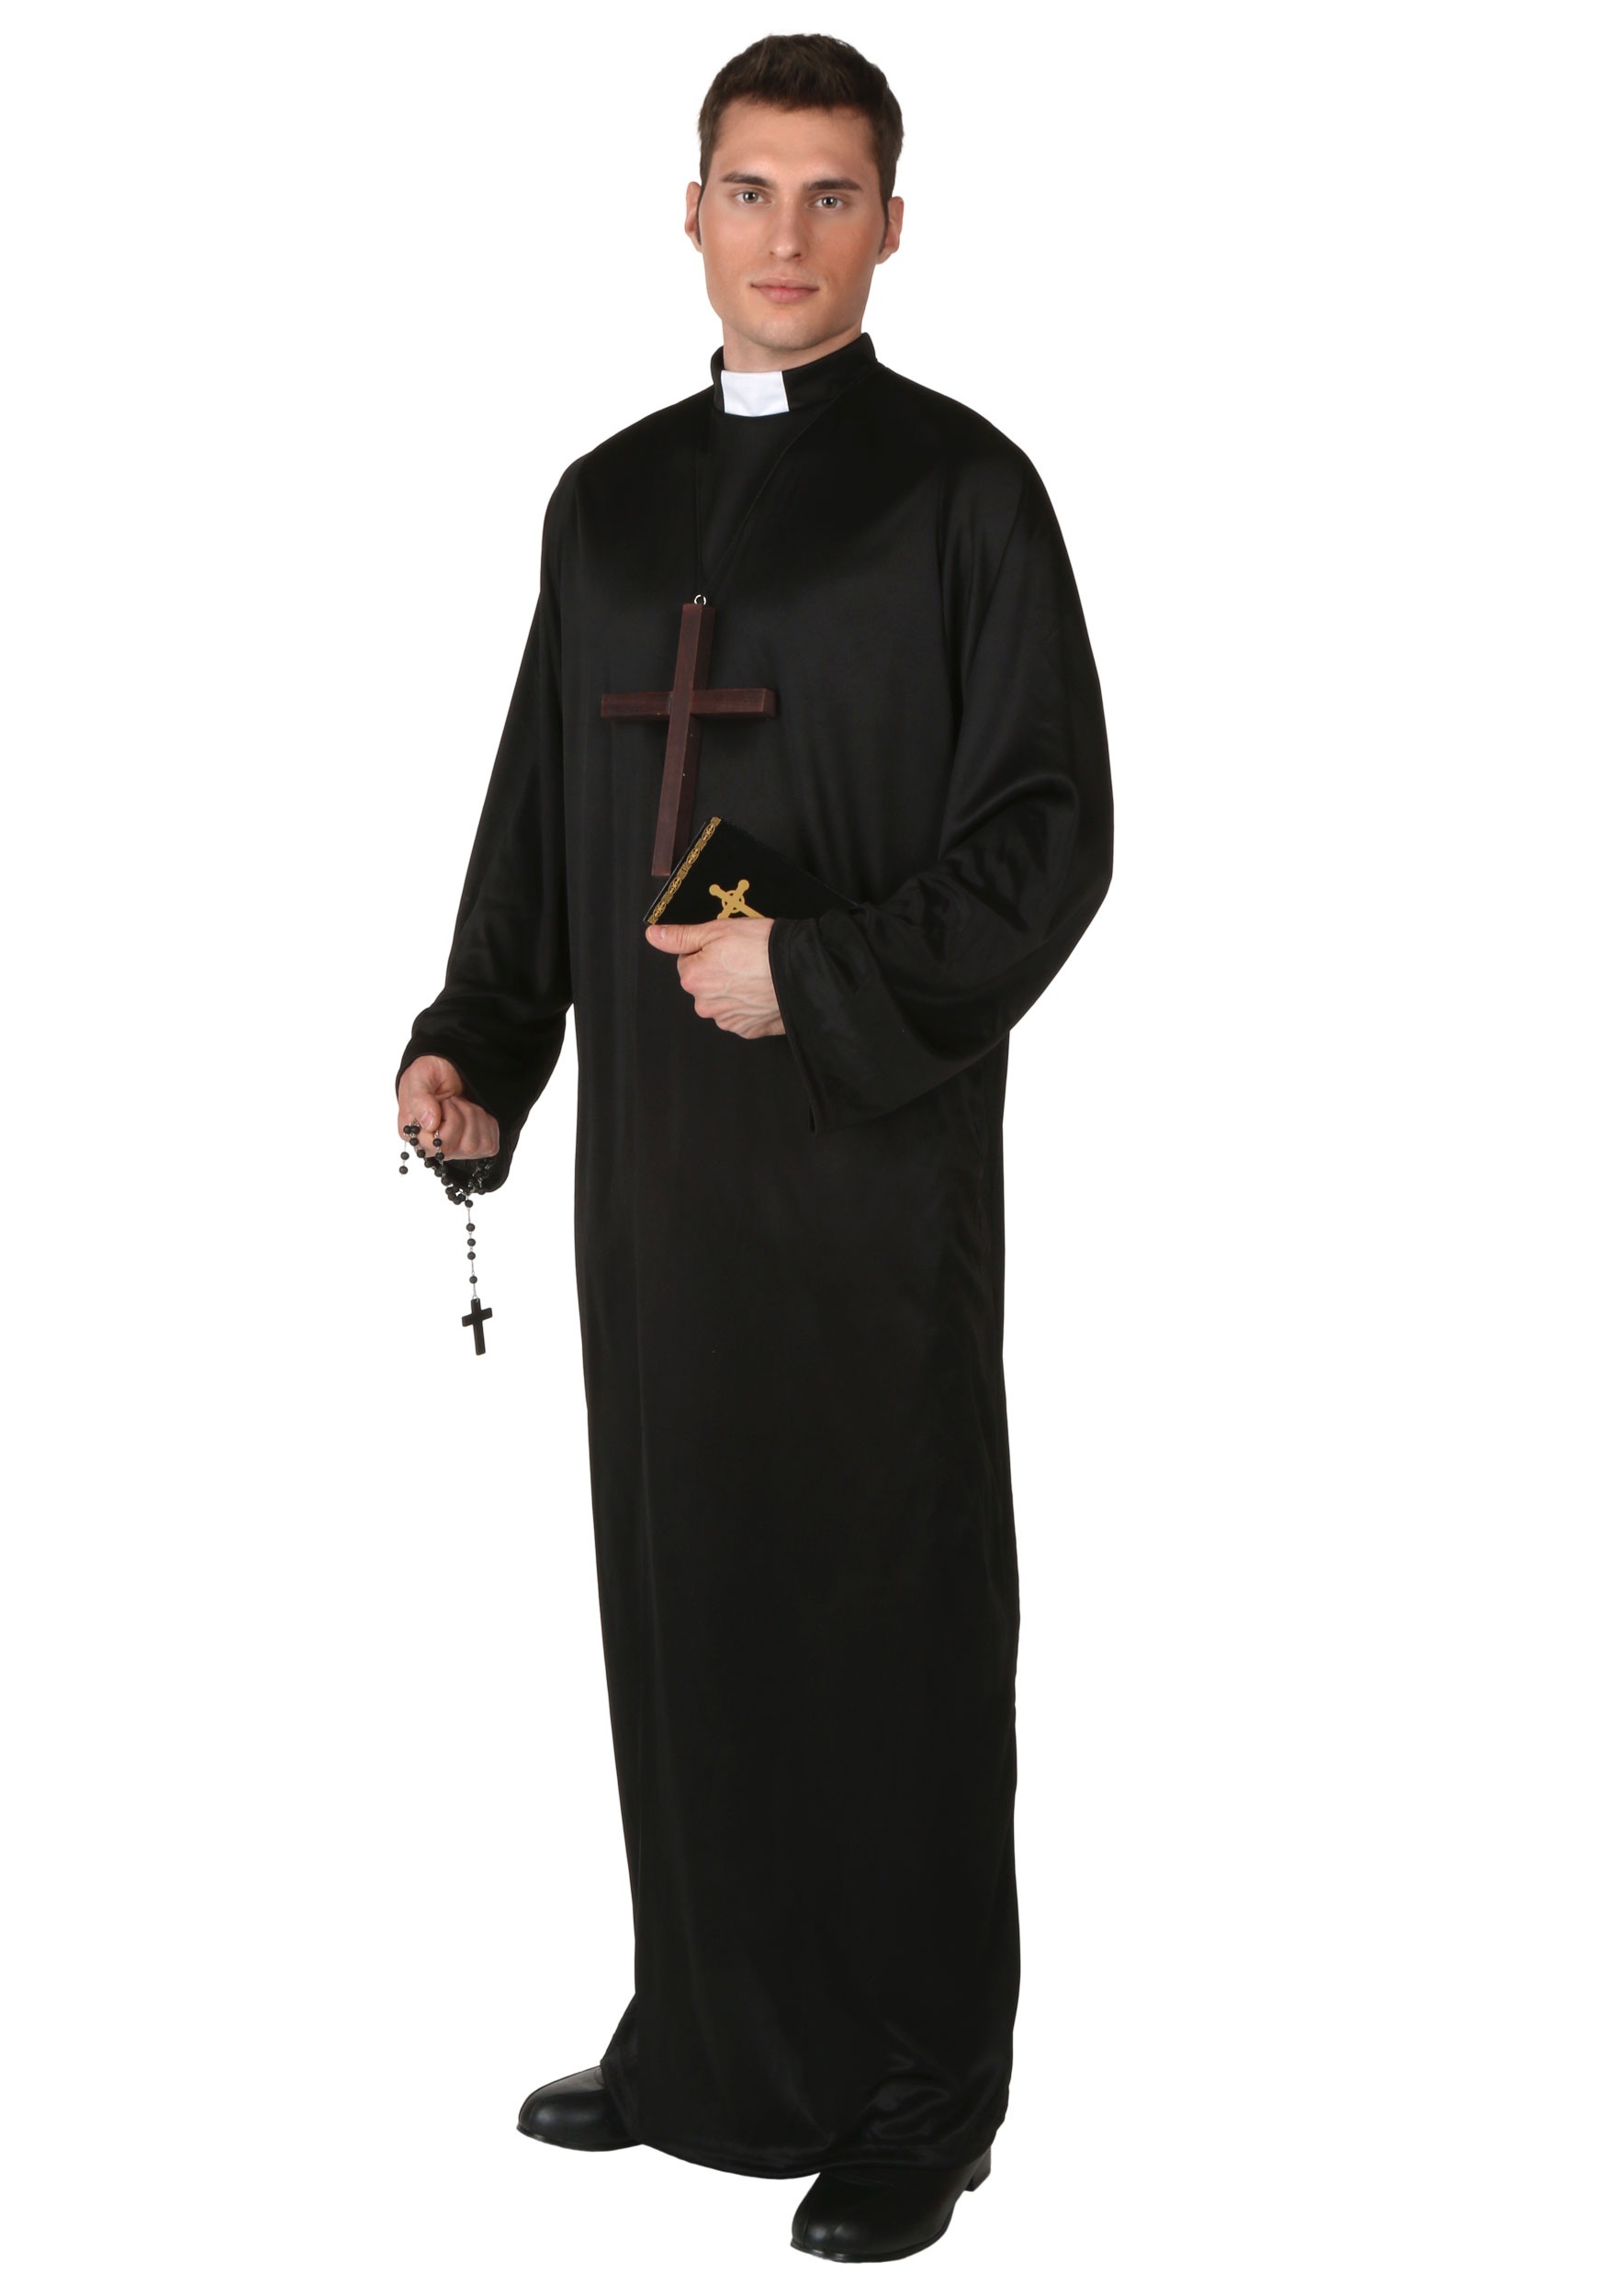 Pri est. Священник (Priest, Великобритания, 1994). Сутана католического священника. Пастер католический священник. Мантия священника Католика.